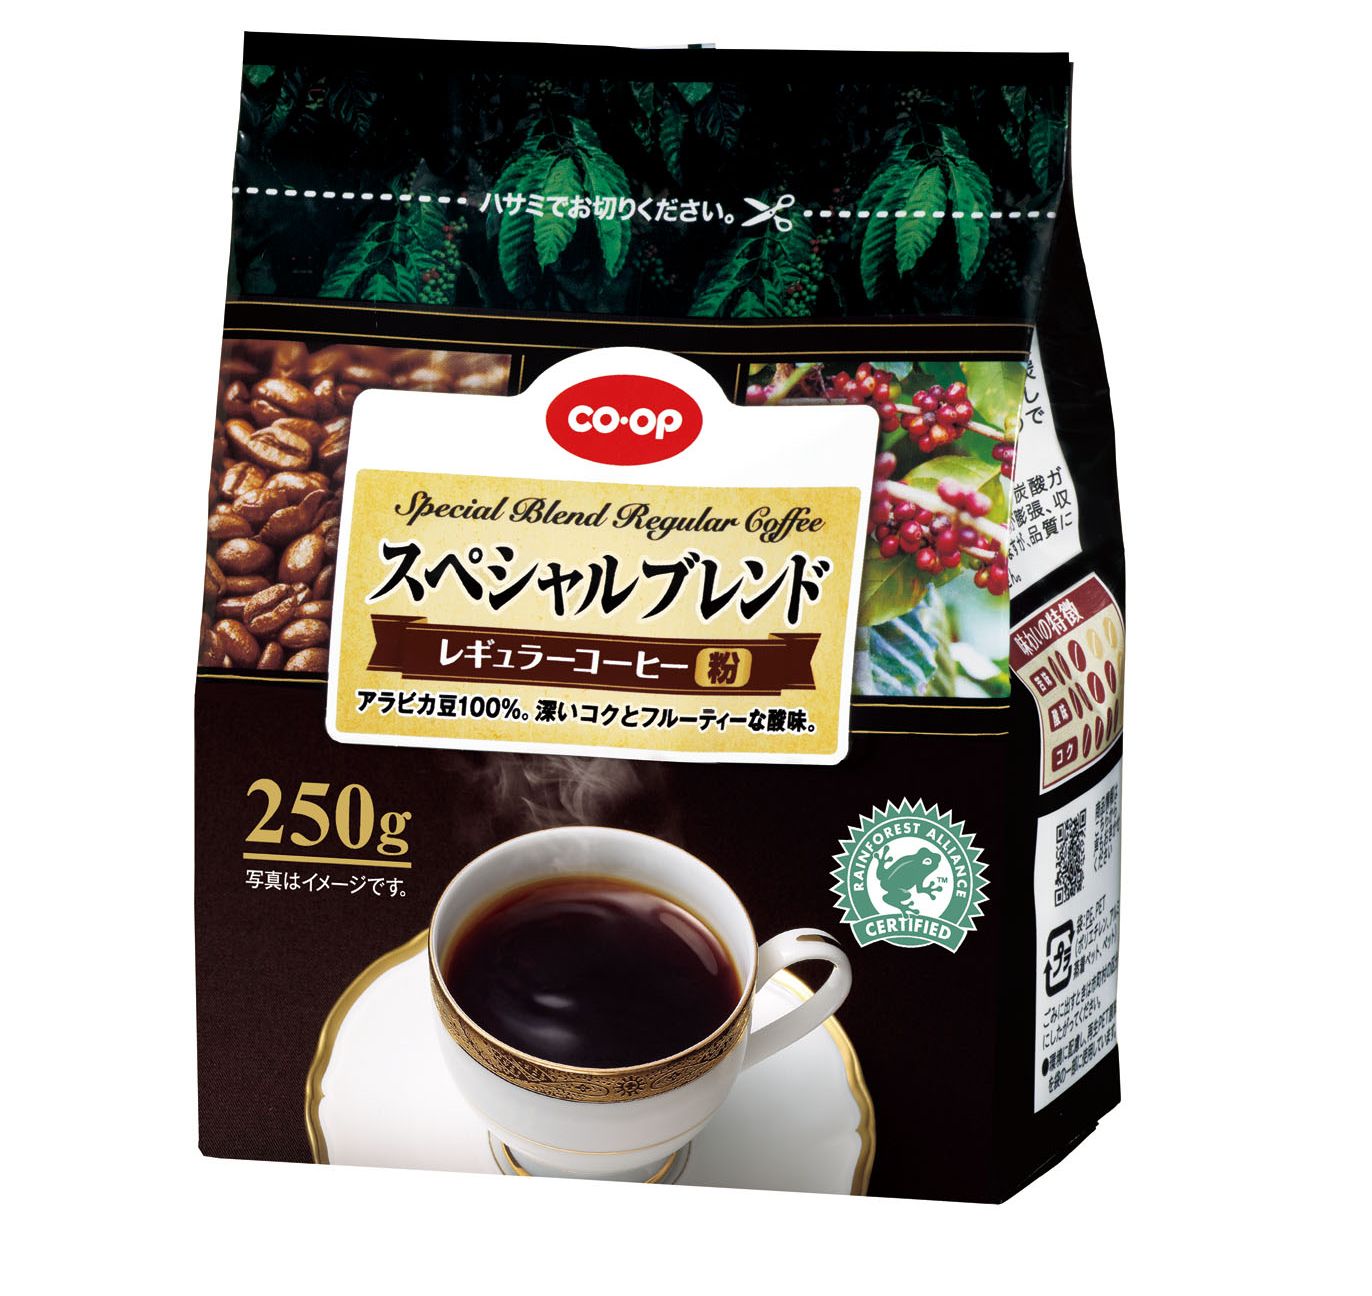 ＣＯ・ＯＰ スペシャルブレンドレギュラーコーヒー」新発売レインフォレスト・アライアンス認証農園で栽培されたコーヒー豆のみを使用 | ニュースリリース  | 日本生活協同組合連合会